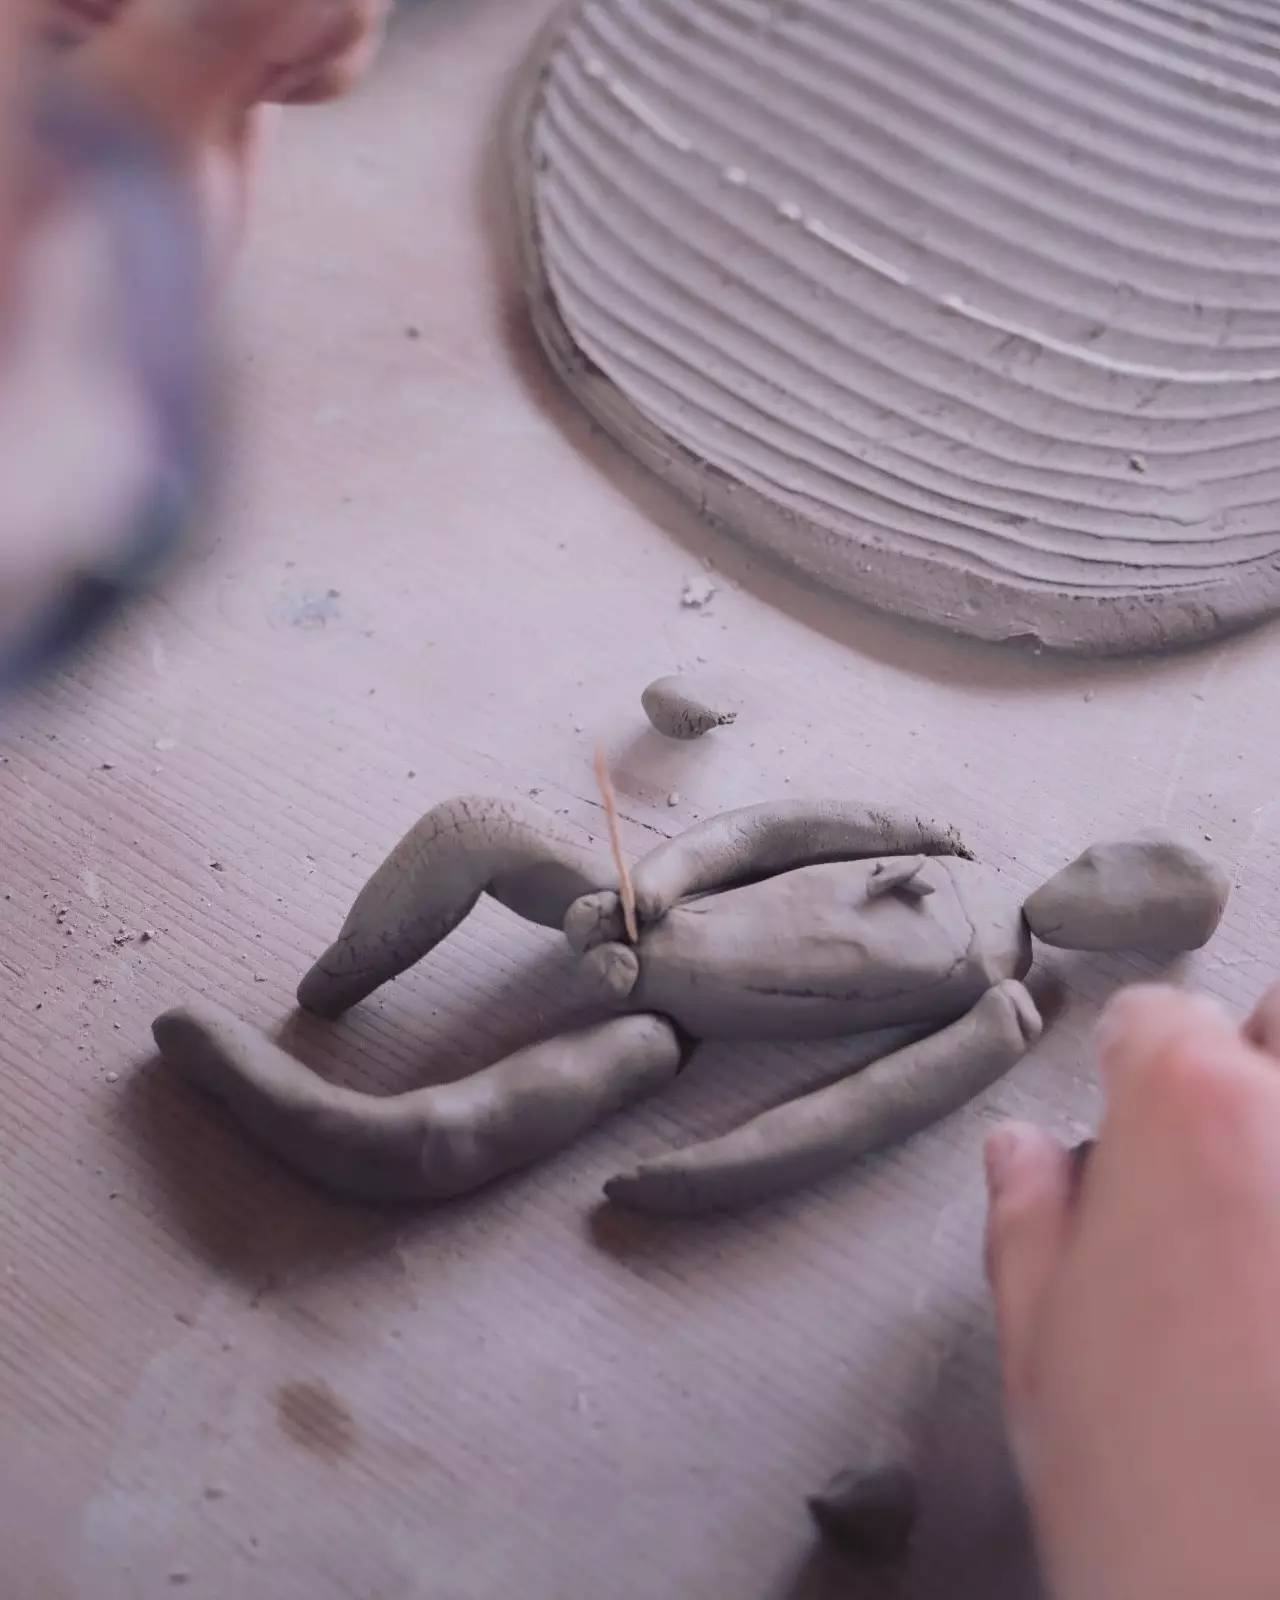 陶艺,不仅仅是拉坯,只要有想法,初学者也能创造出有个性的陶艺作品